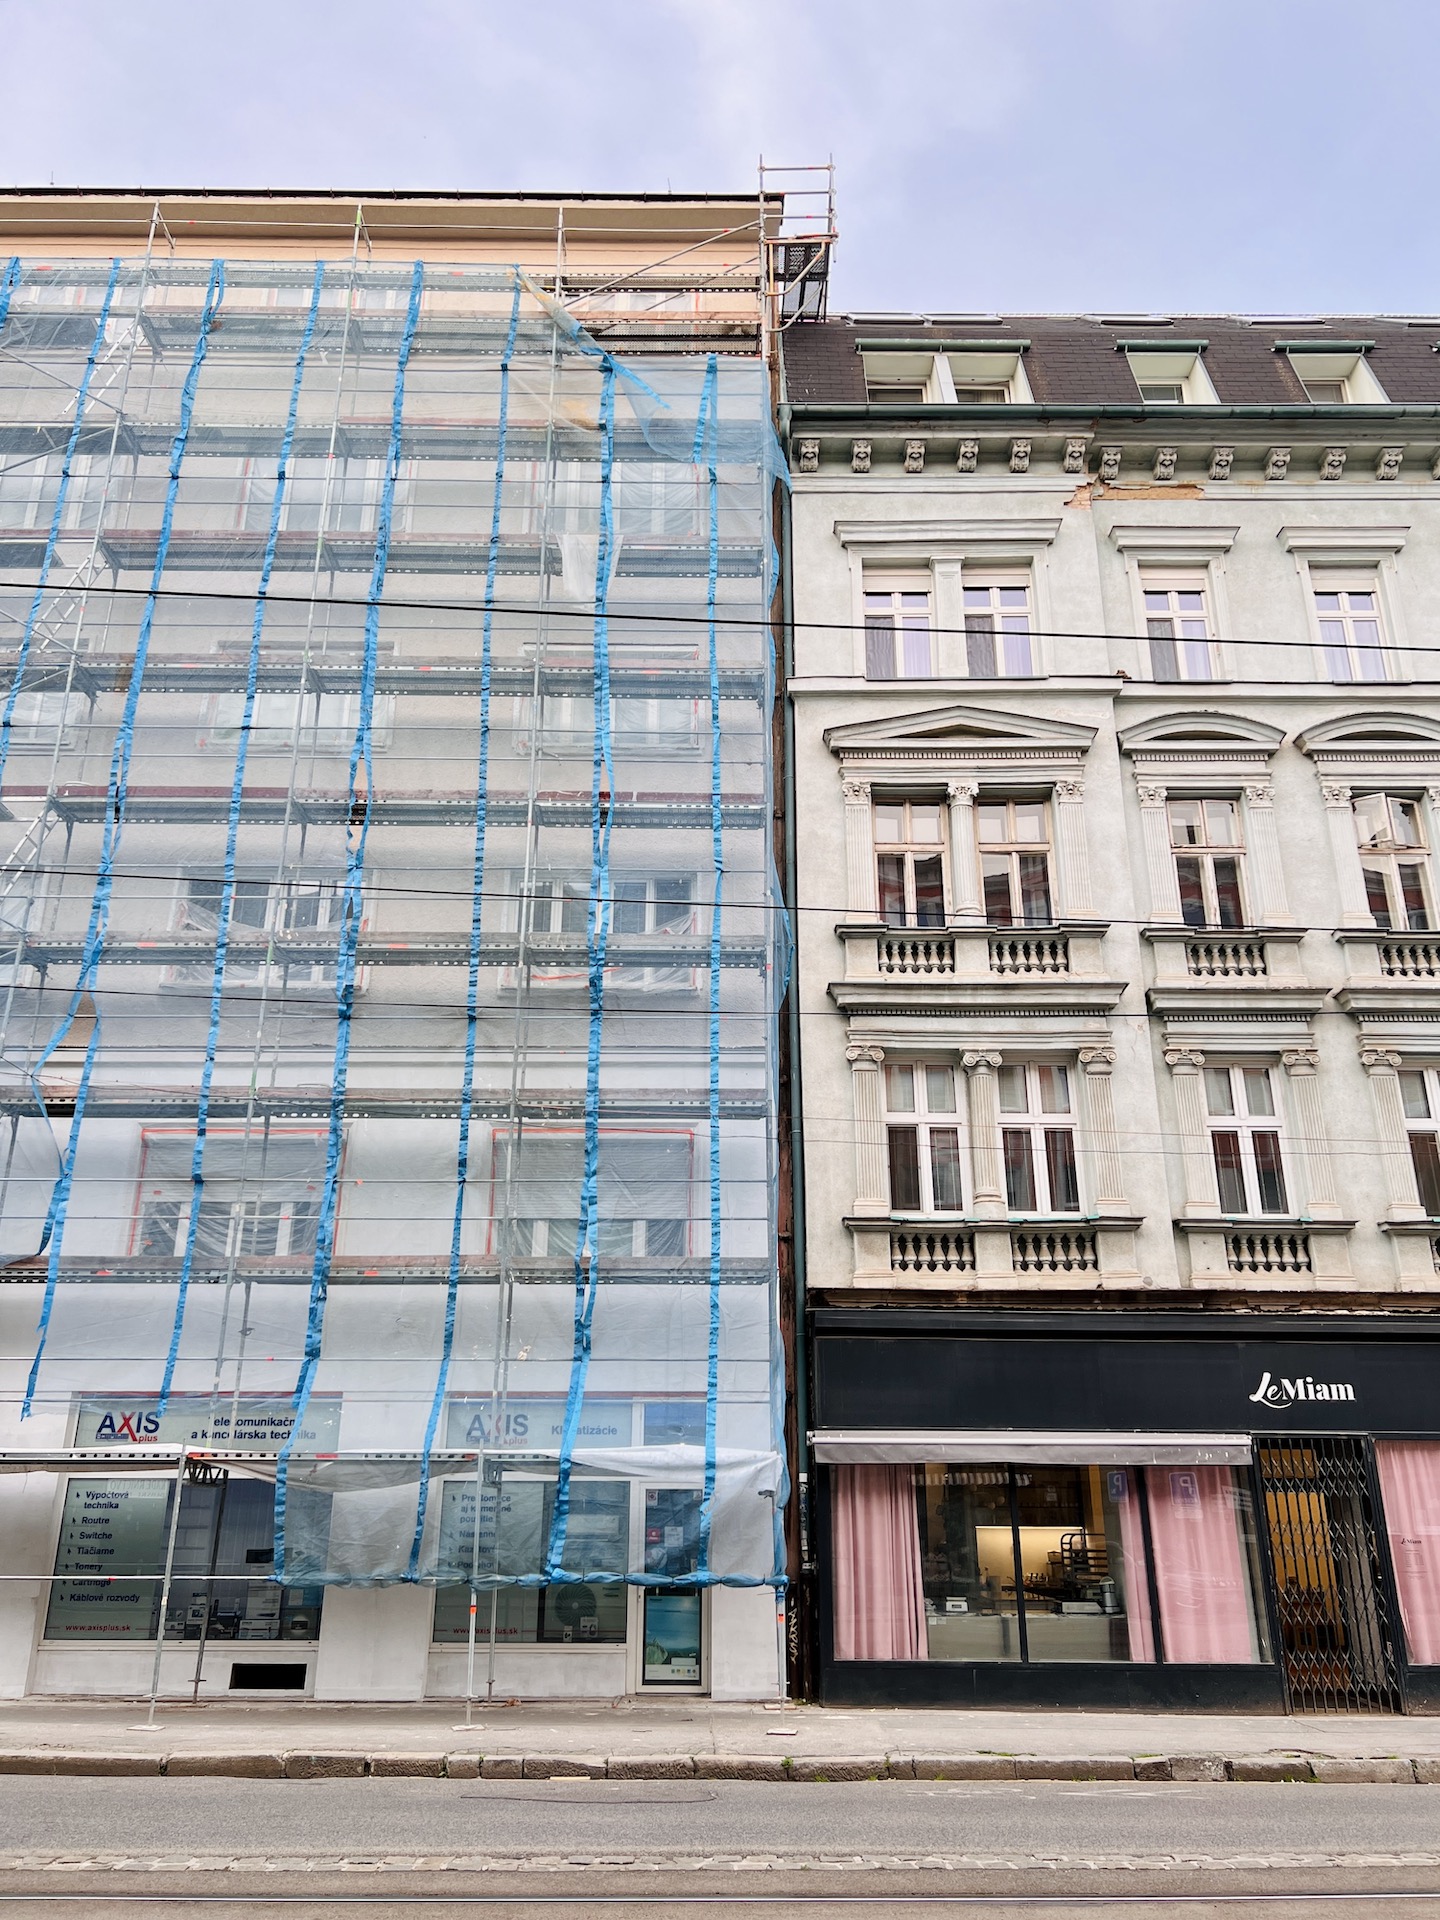 Rekonštrukcia aktuálne prebieha aj na Špitálskej 20 (vľavo). V budúcnosti bude zrekonštruovaný aj dom na Špitálskej 16-18 (vpravo)